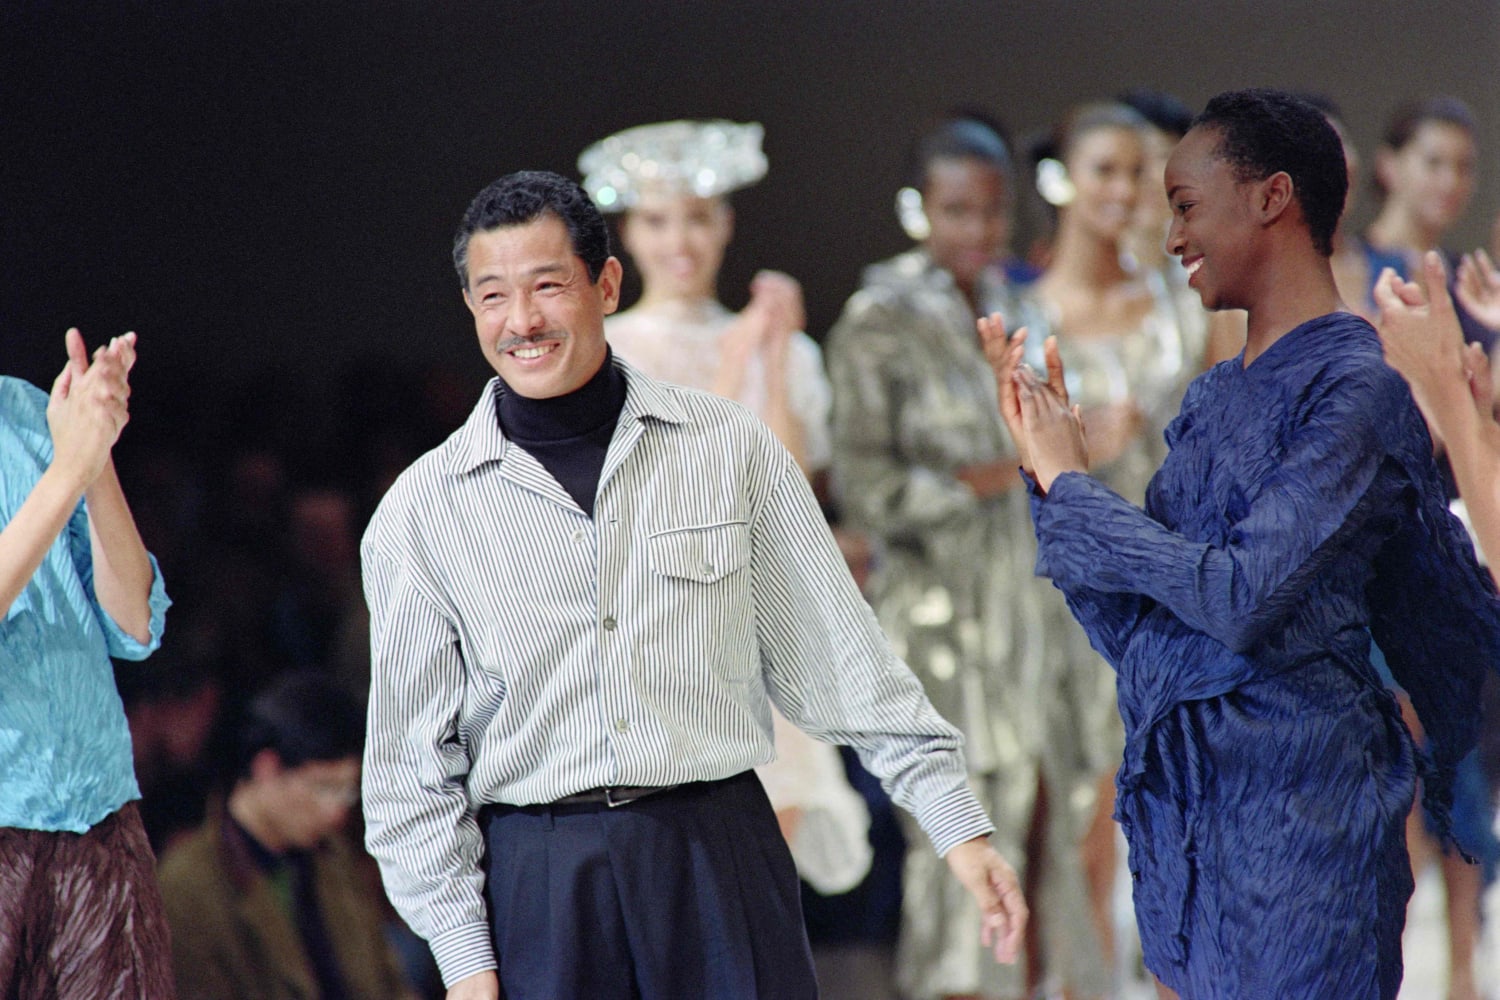 Issey Miyake, Japanese fashion designer, dies at 84